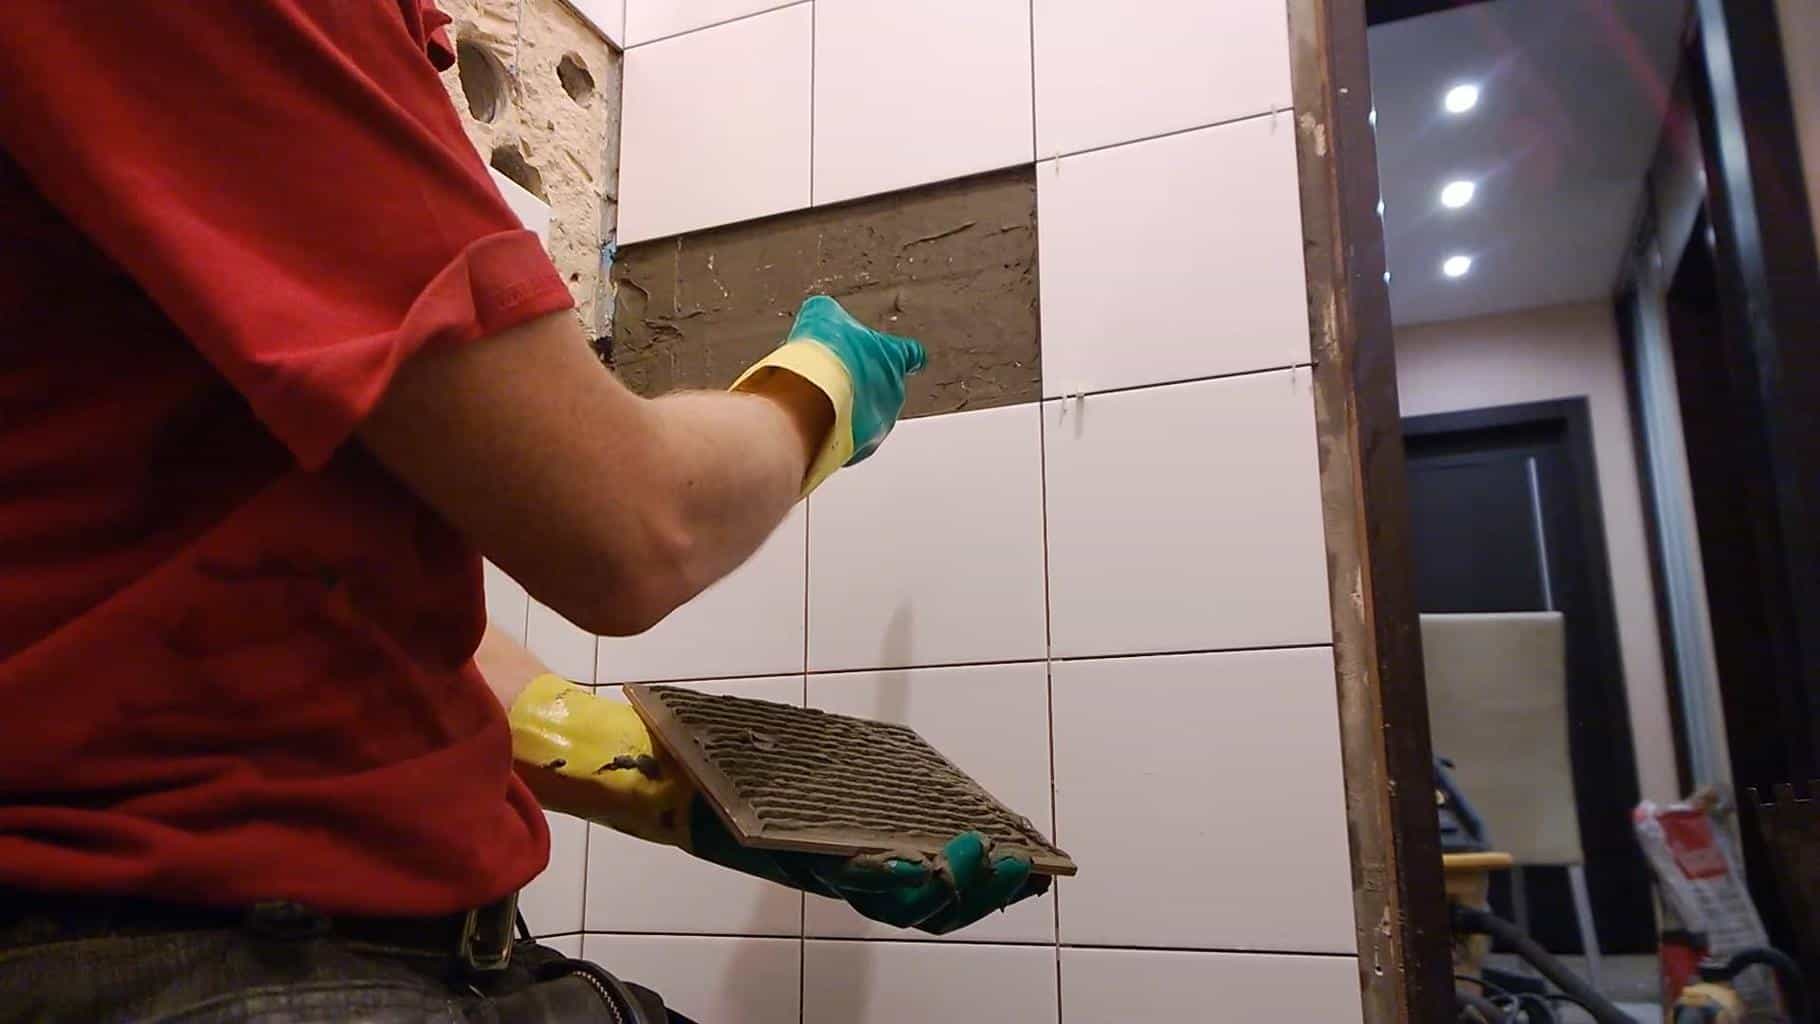 Что делать если отваливается плитка в ванной, в чем причина? | онлайн-журнал о ремонте и дизайне